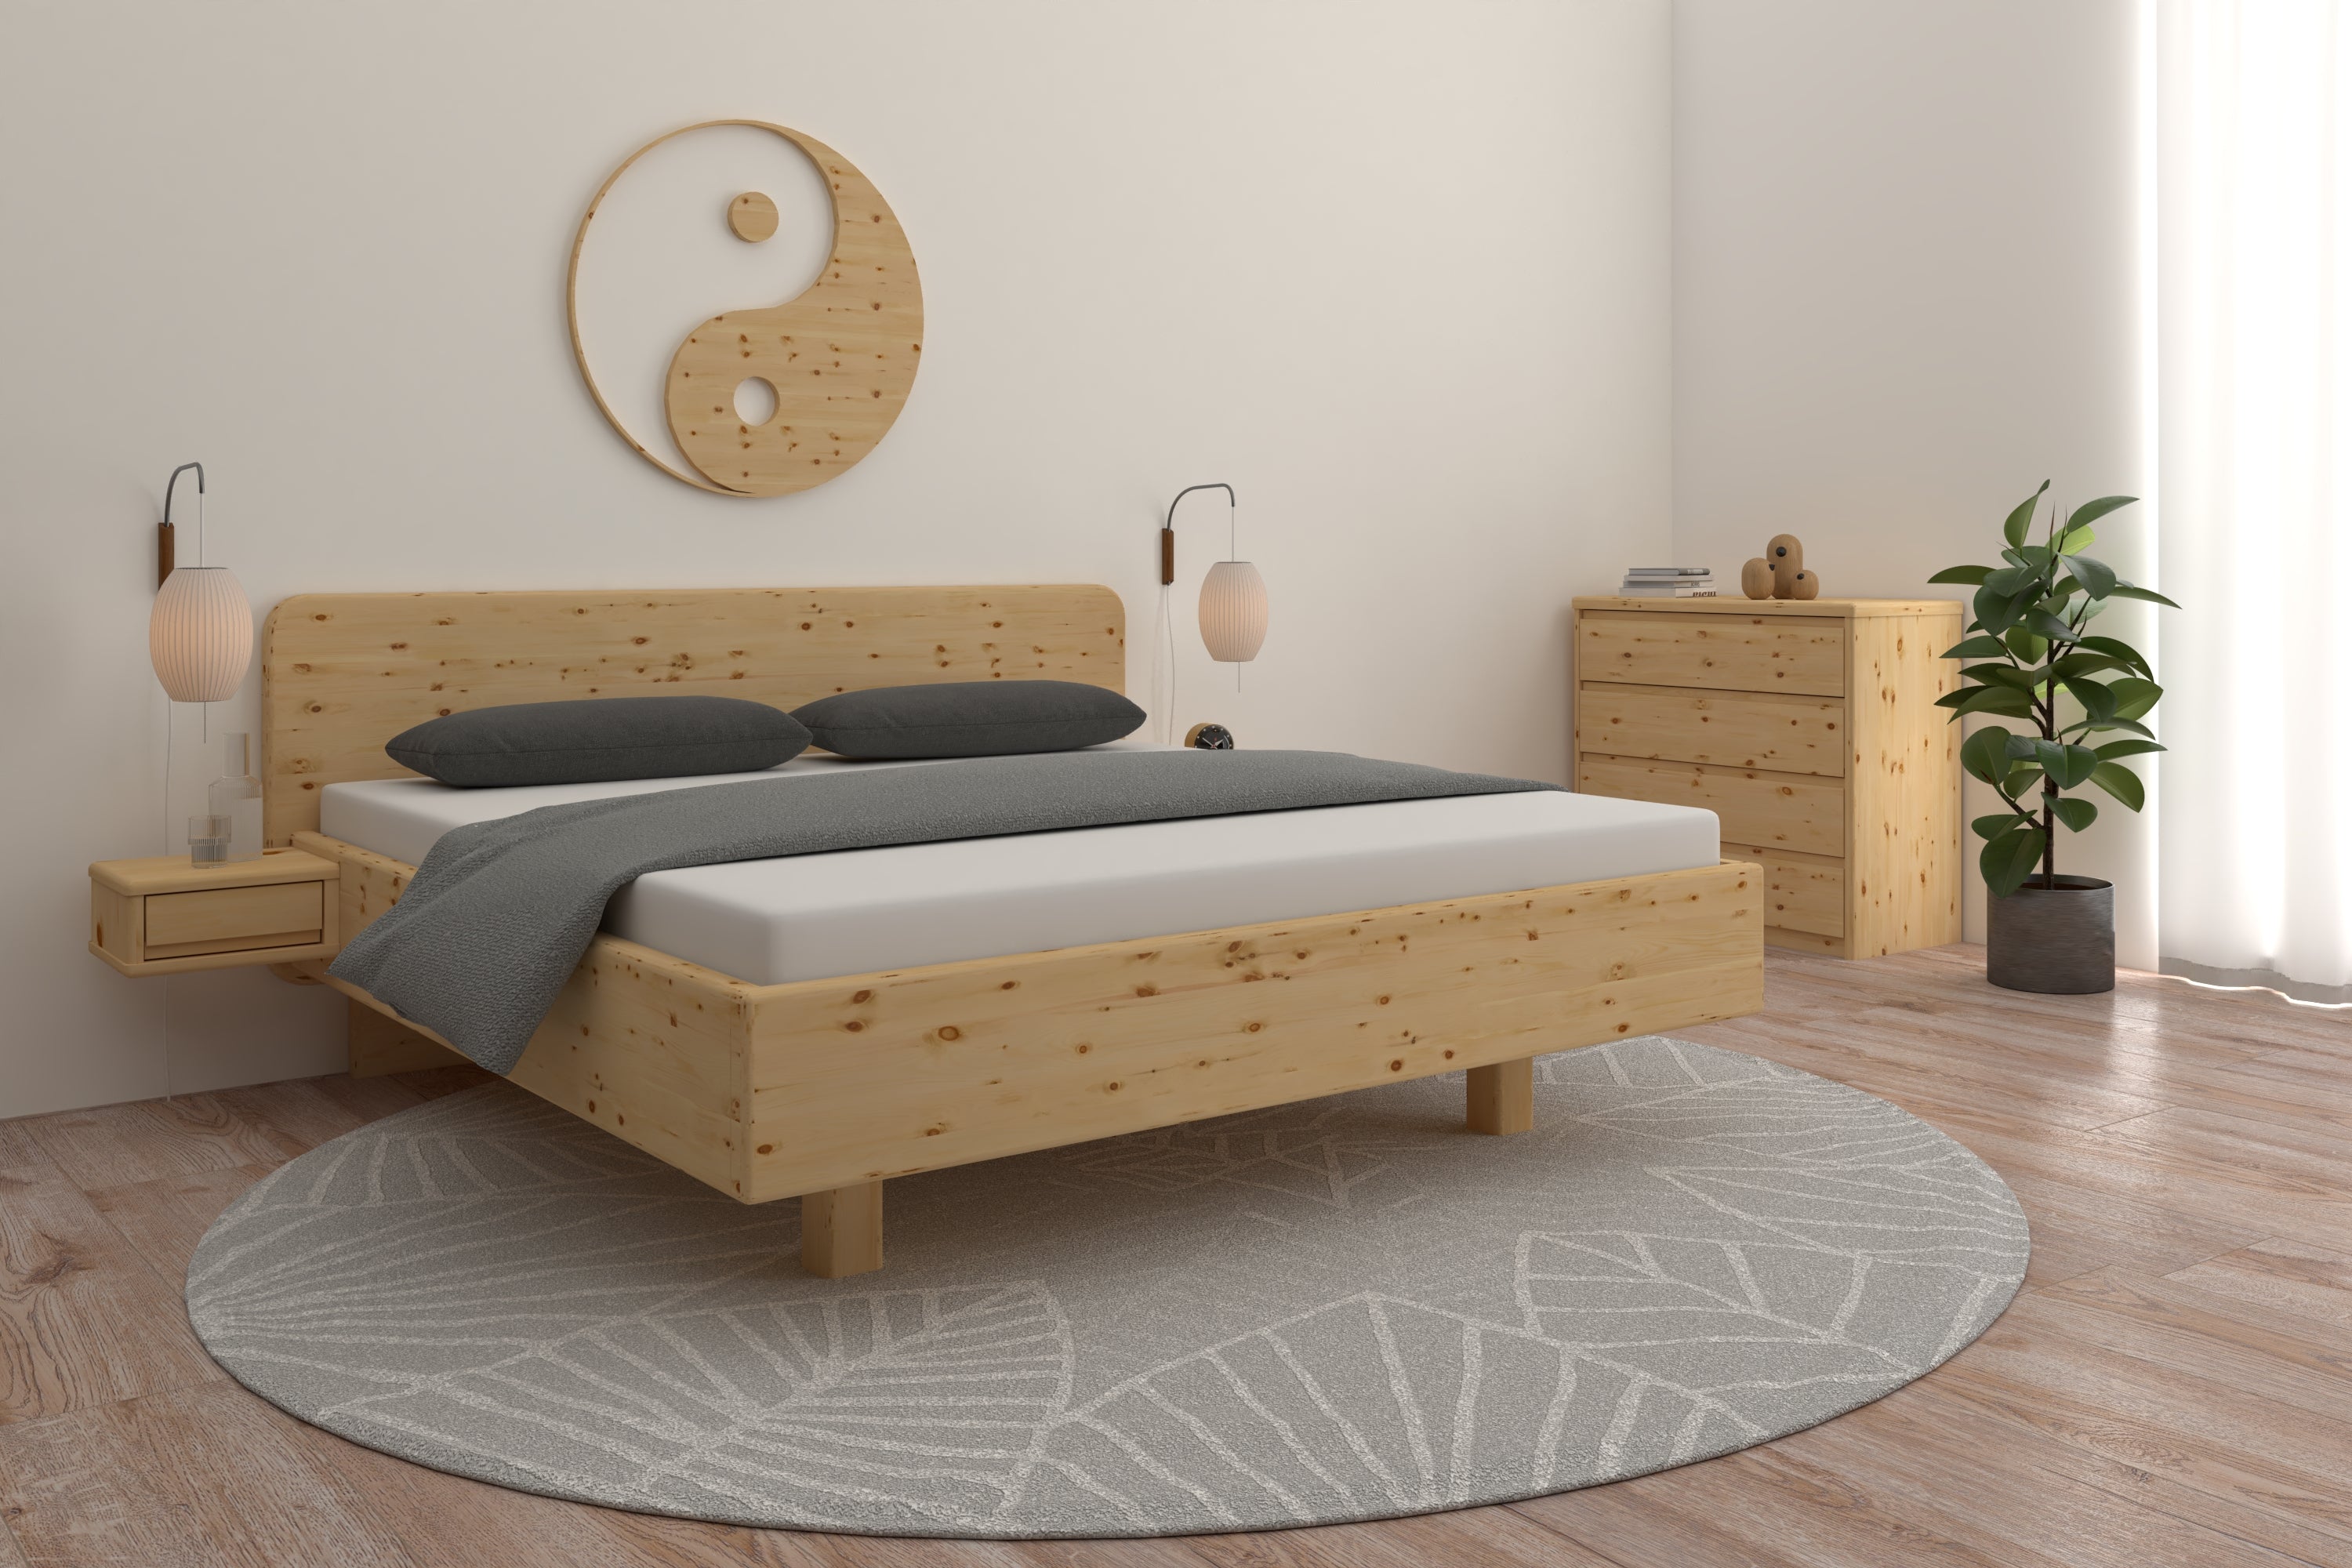 ZIrbenbett Isabella in einem harmonischen Feng Shui Schlafzimmer